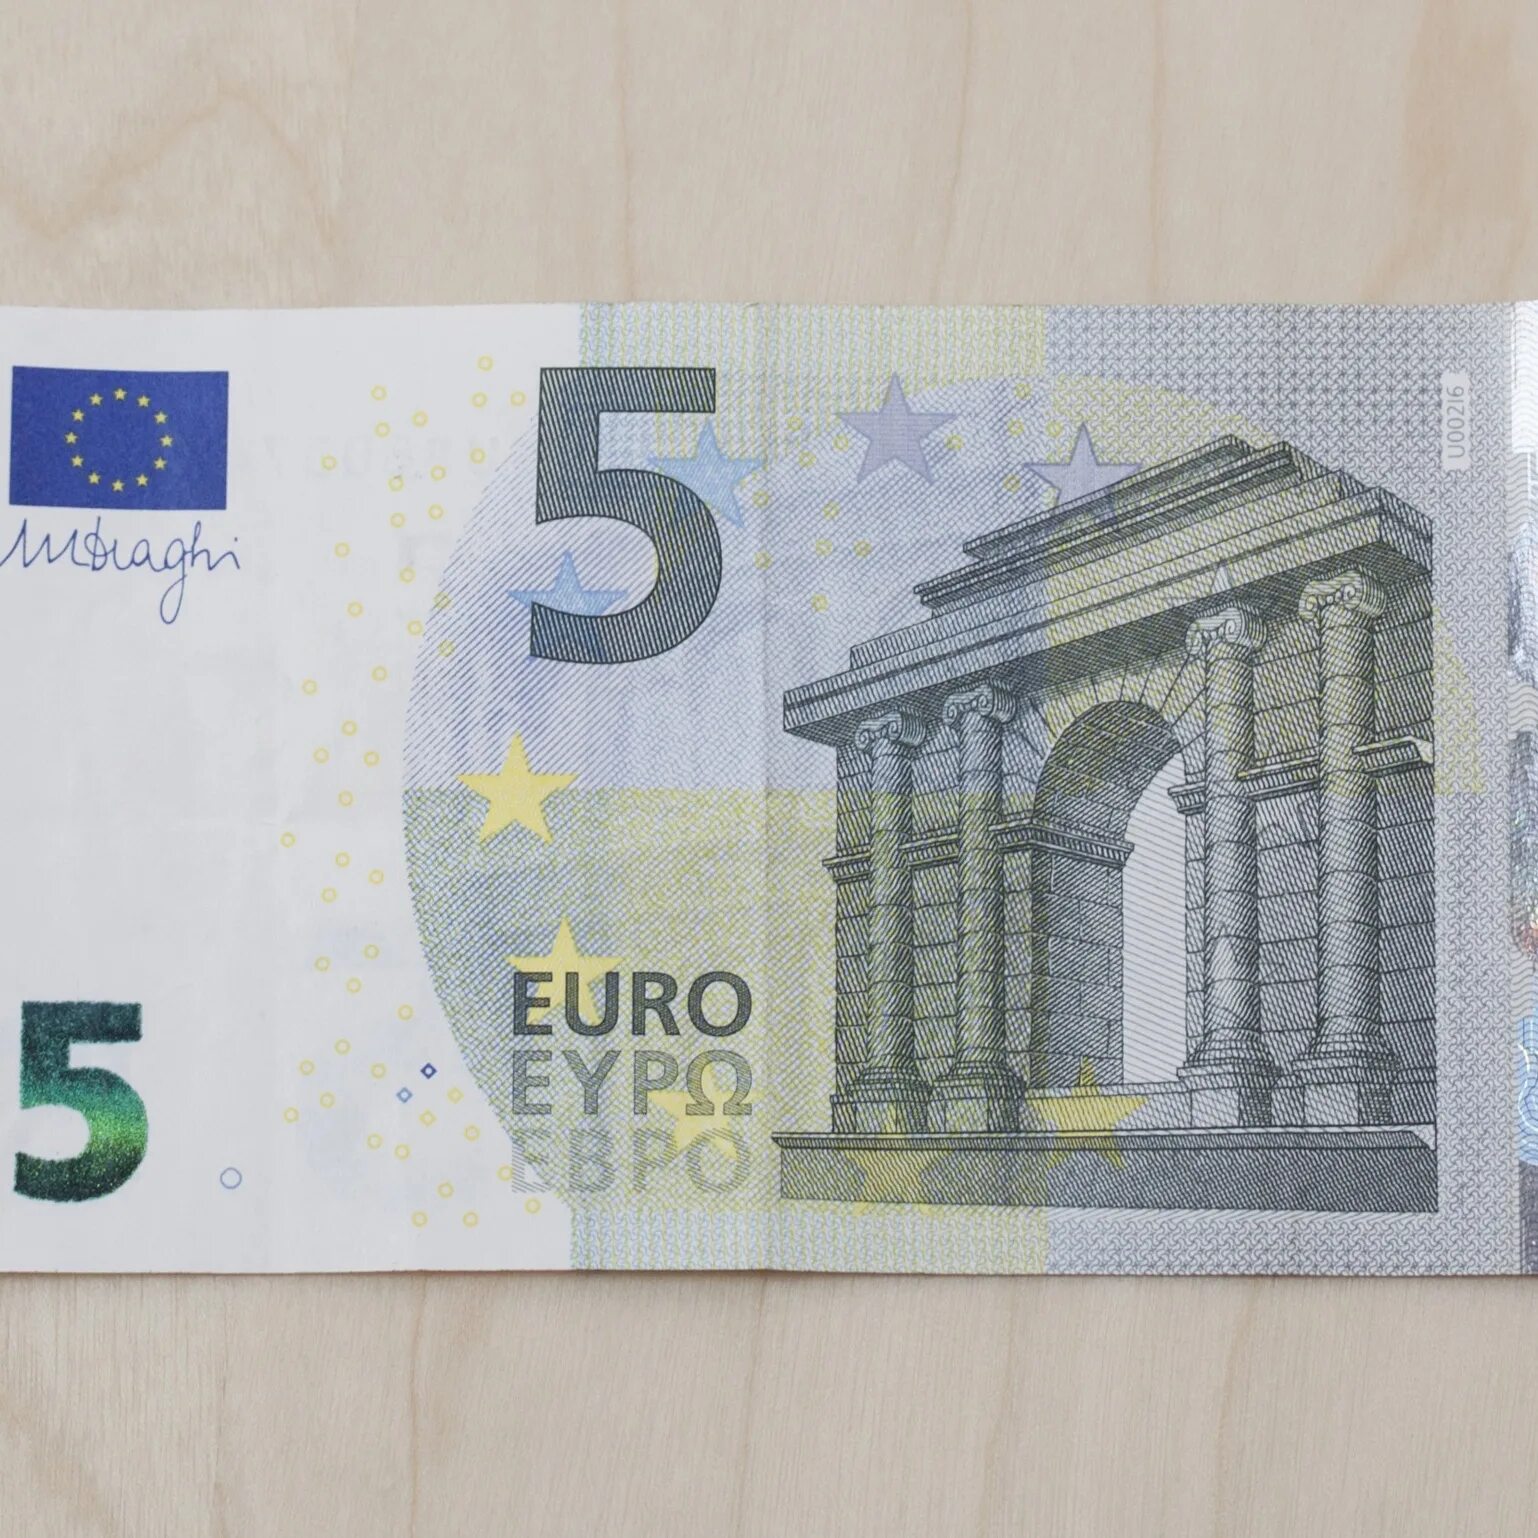 5 Евро купюра. Купюра 5 евро новая. 10 Евро купюра. 10 Евро банкноты евро.